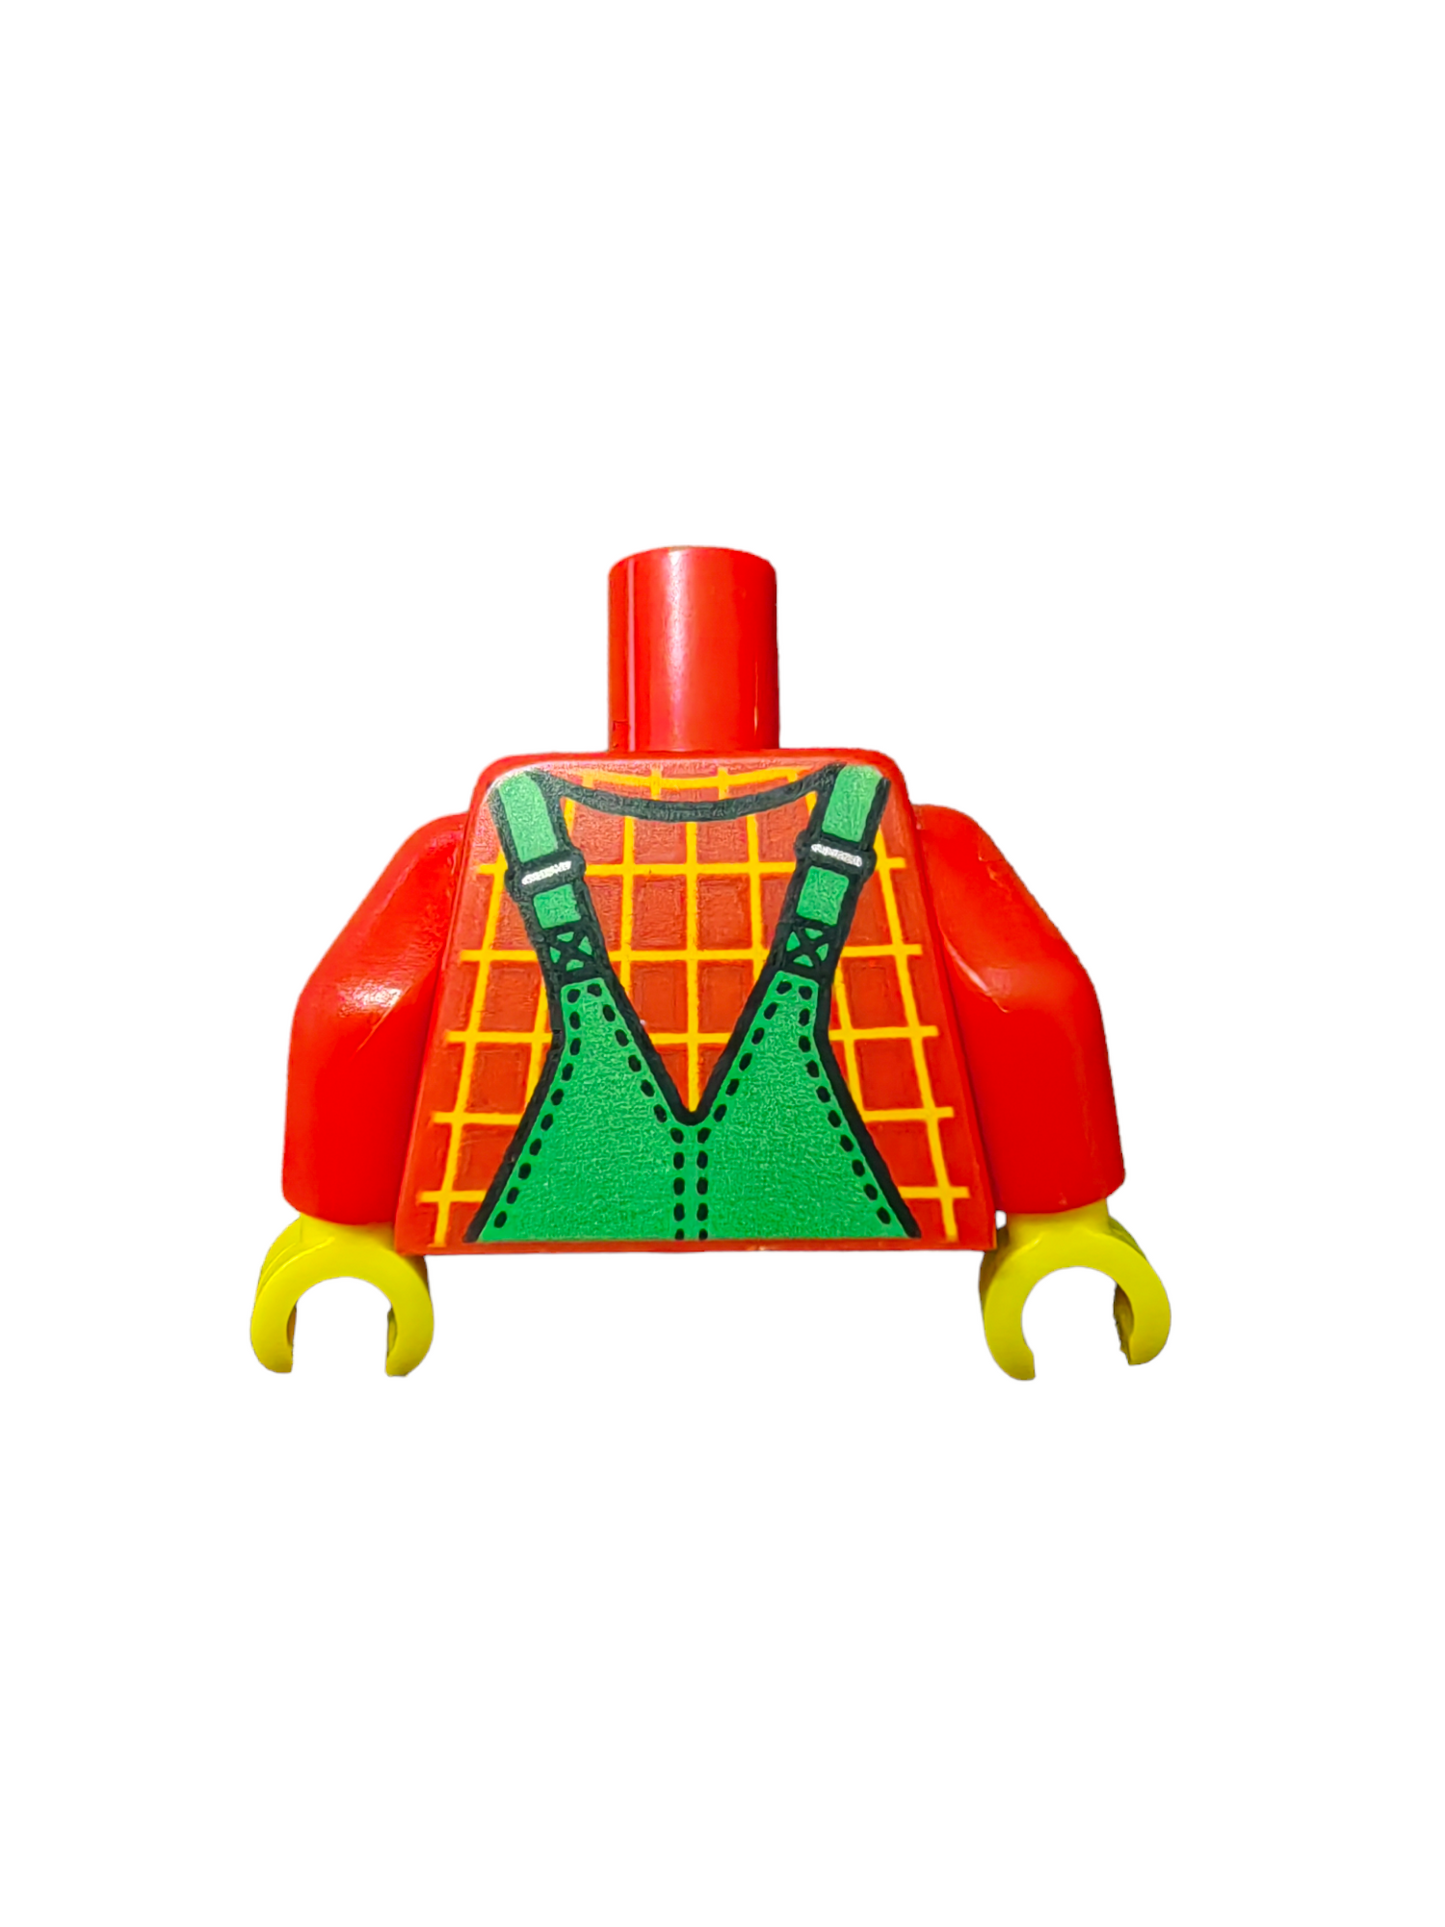 LEGO Torso, Green Overalls and Check Shirt - UB1139